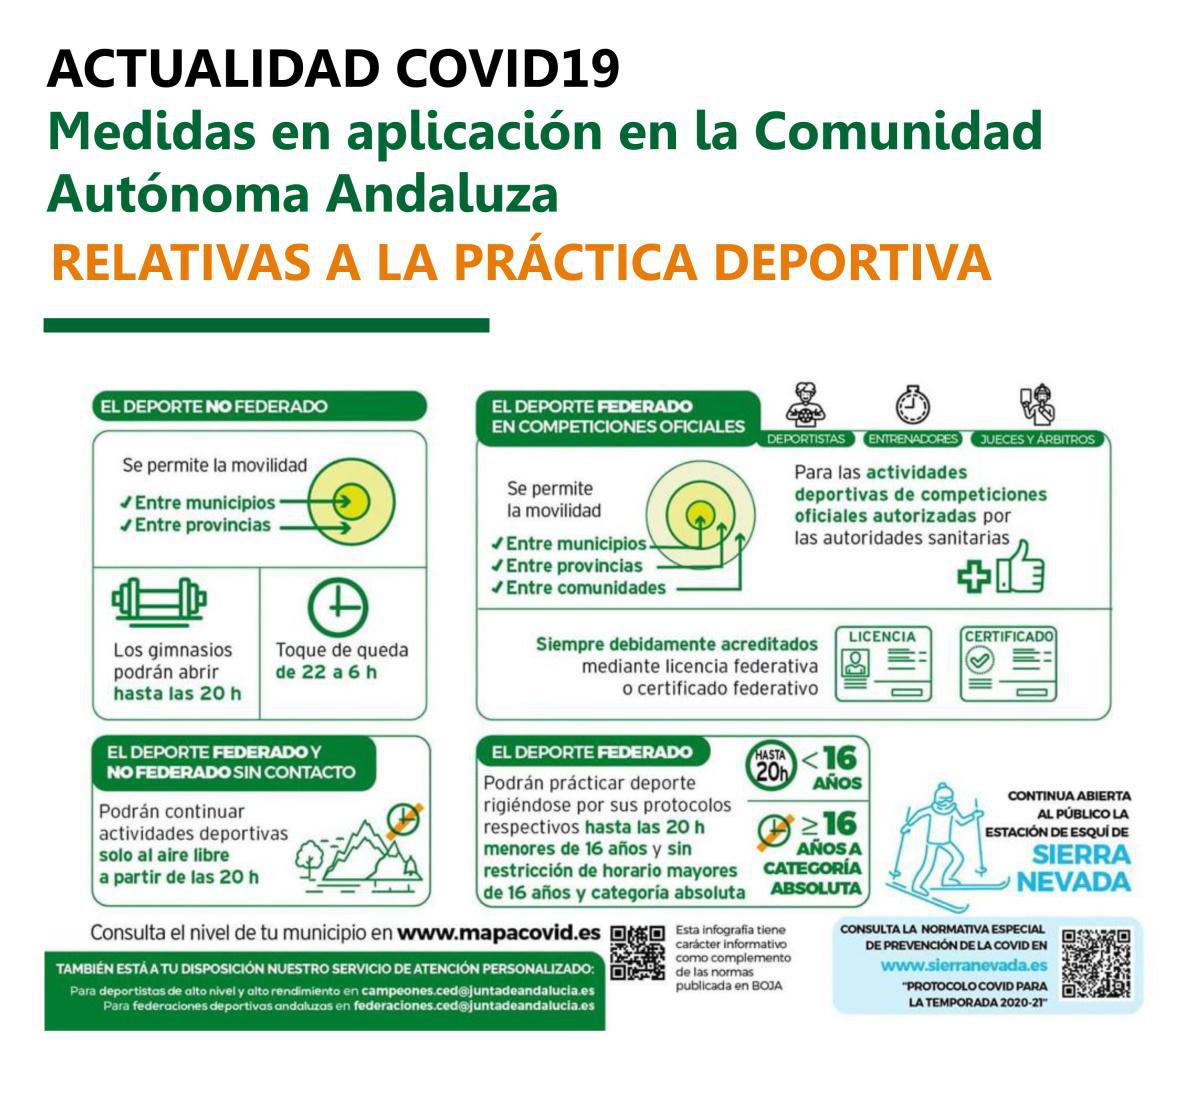 El Distrito Sevilla Sur, incluida la ciudad Lebrija, se sitúa desde hoy en Nivel 3 de Alerta Sanitaria en un día en el que el número de PCRs positivas en nuestra ciudad es de 42 casos